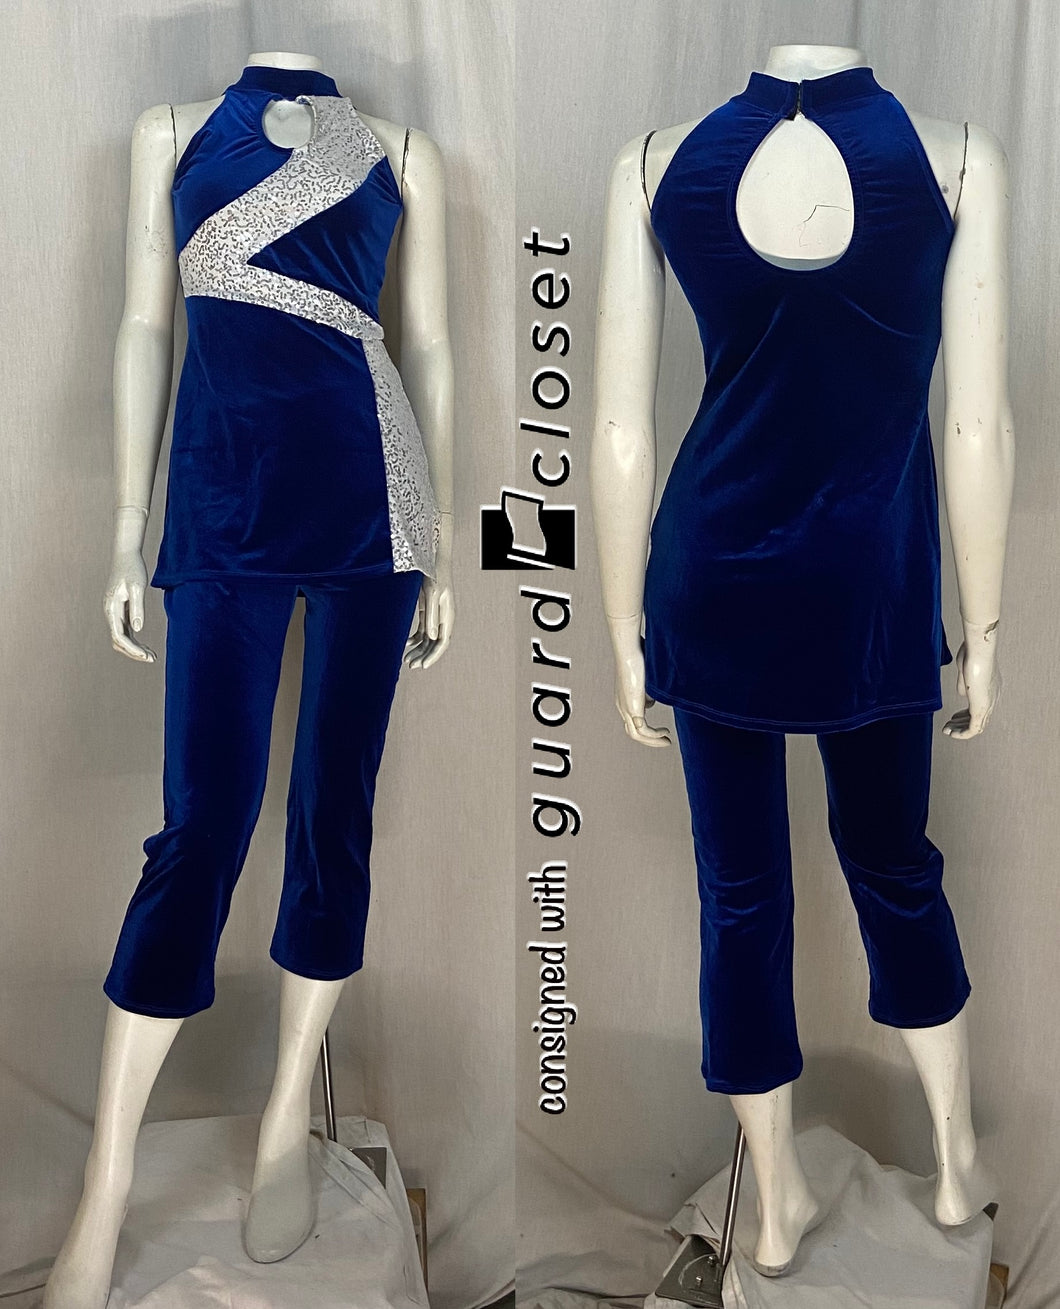 10 royal blue white sleeveless tops + 14 royal blue capri pants –  guardcloset